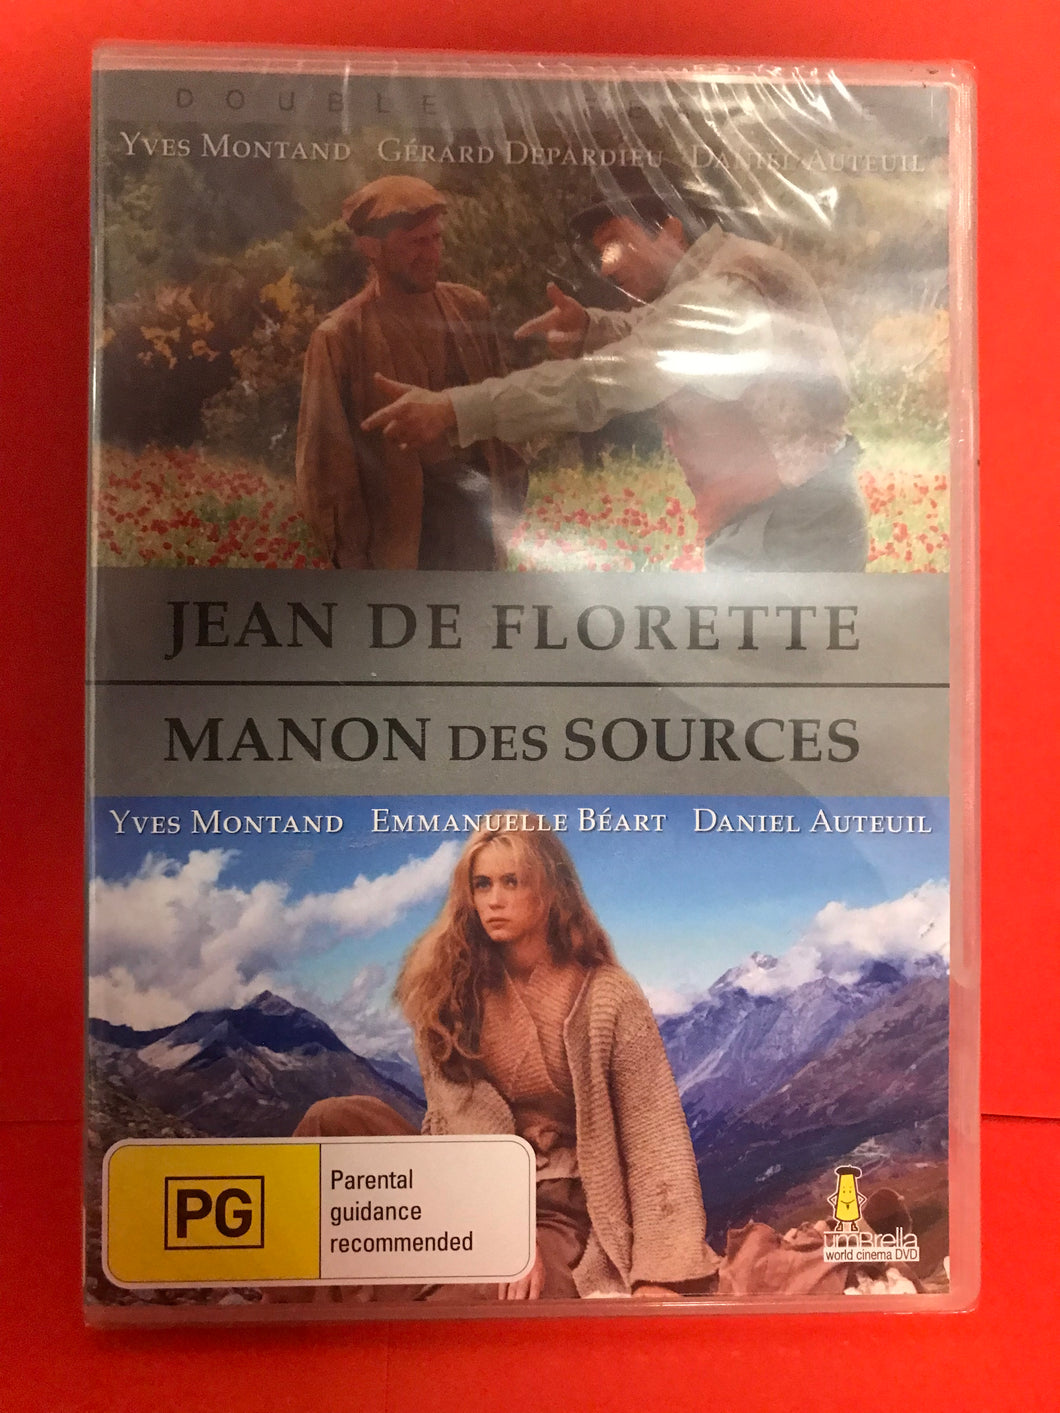 JEAN DE FLORETTE - MANON DES SOURCES - 2 DVD DISCS (SEALED)